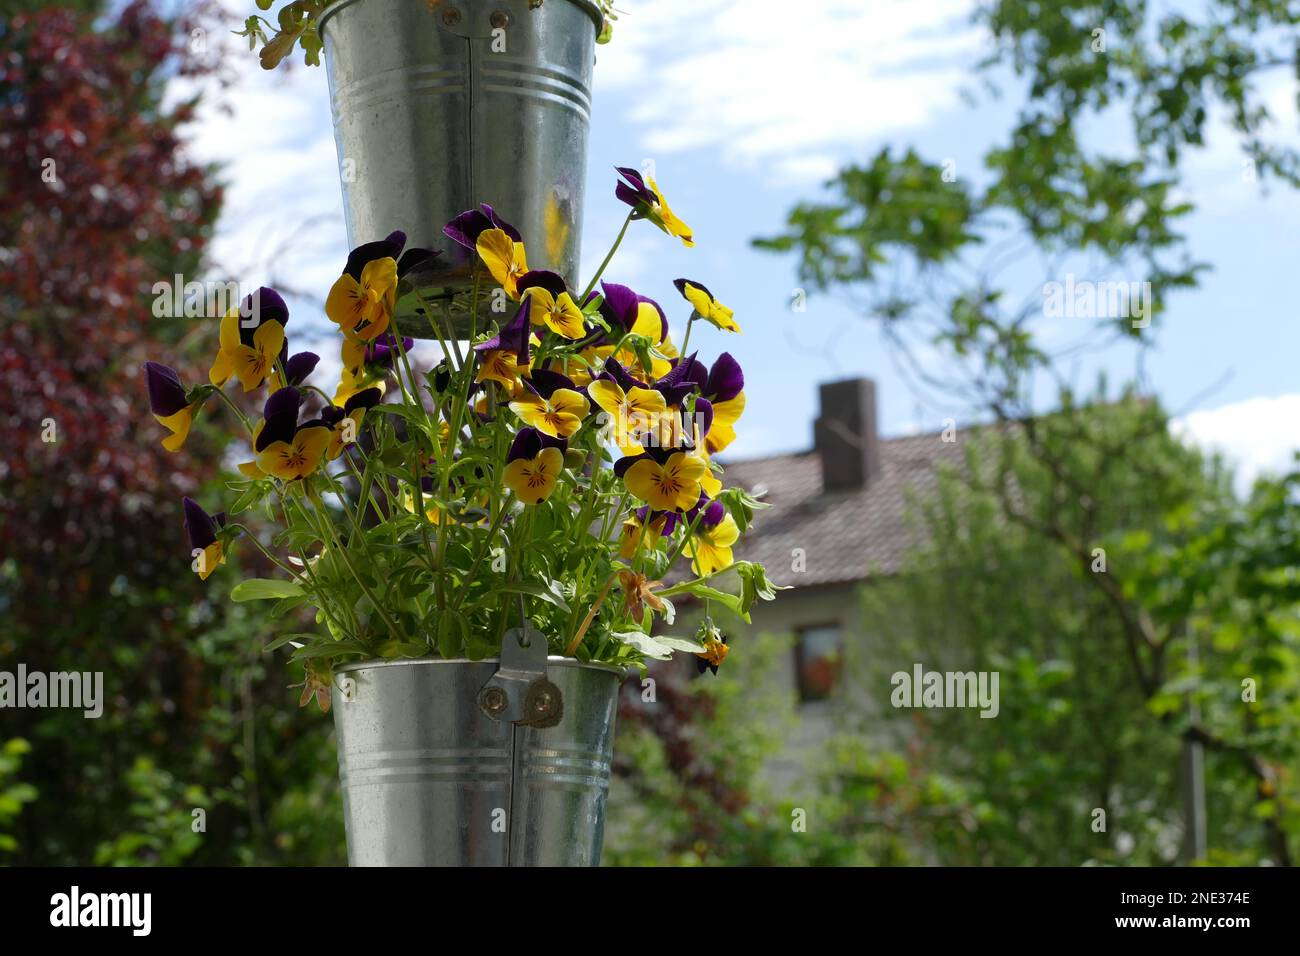 Wunderschöne Blumen in einem hängenden Topf - Beautiful flowers in a hanging pot Stock Photo